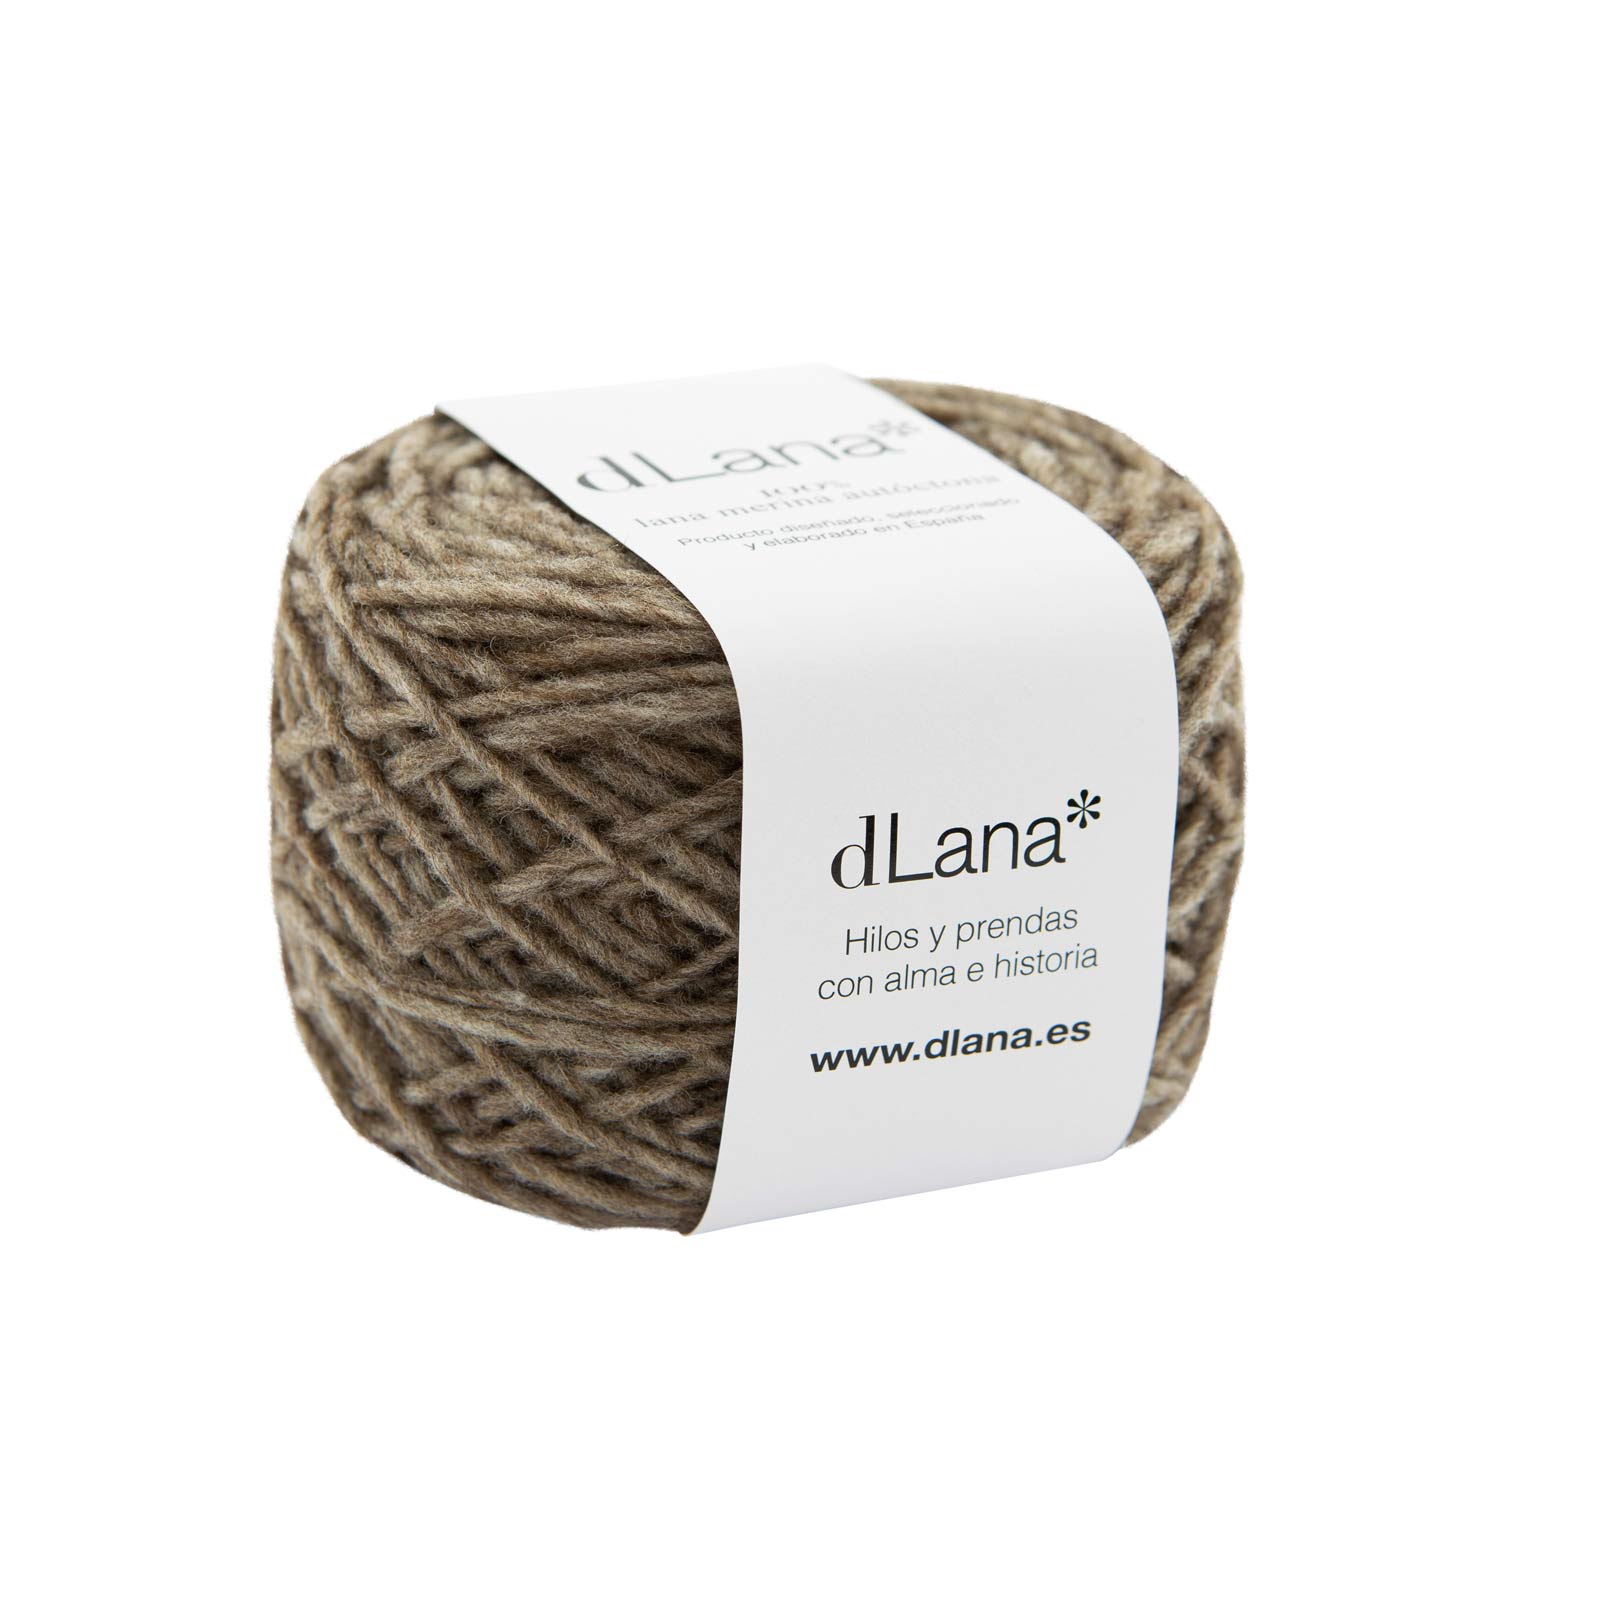 Teje con la mejor lana merino española, suave, ligera y de producción local